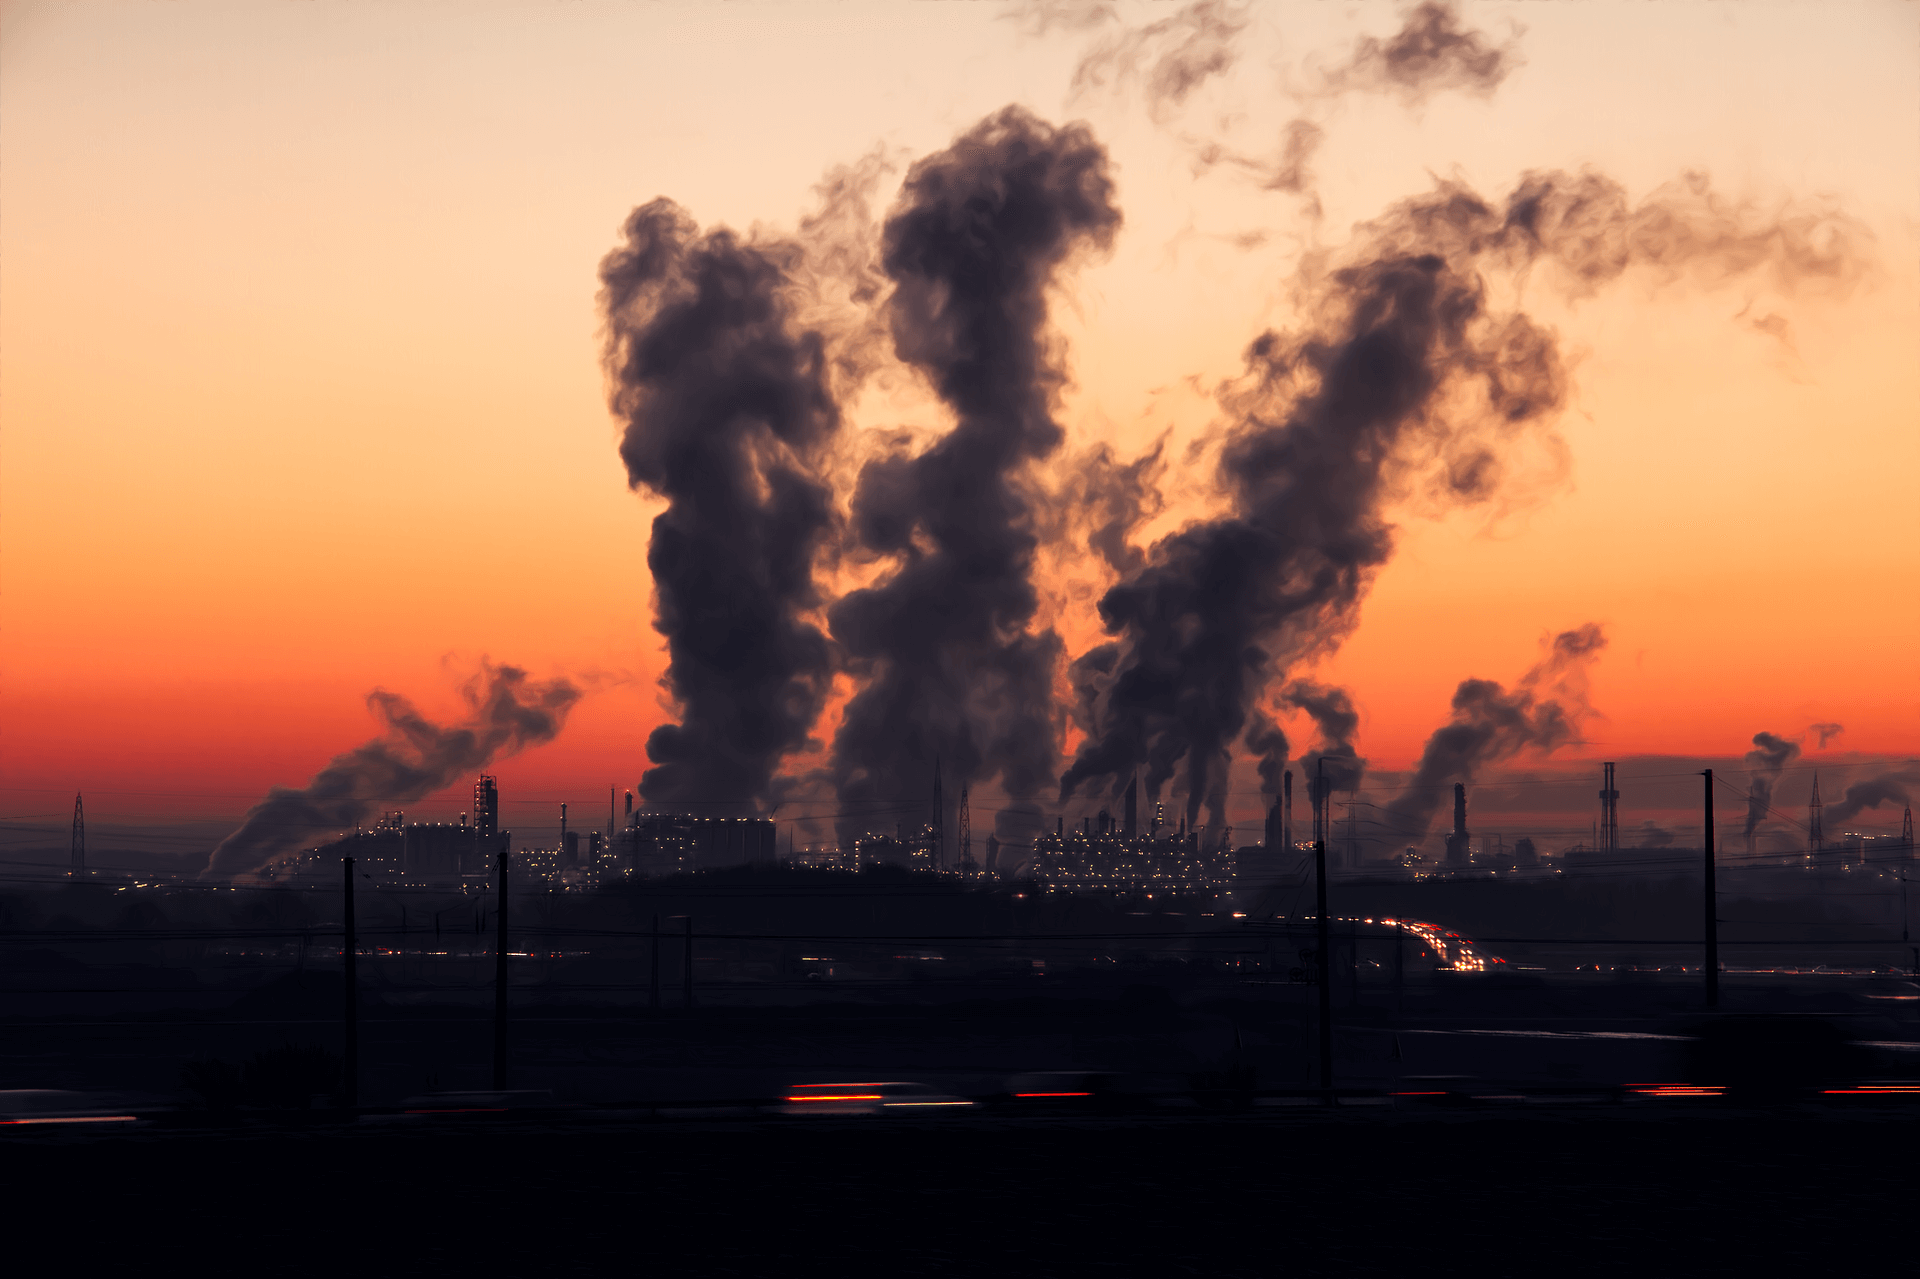 εικόνα της βιομηχανικής ρύπανσης